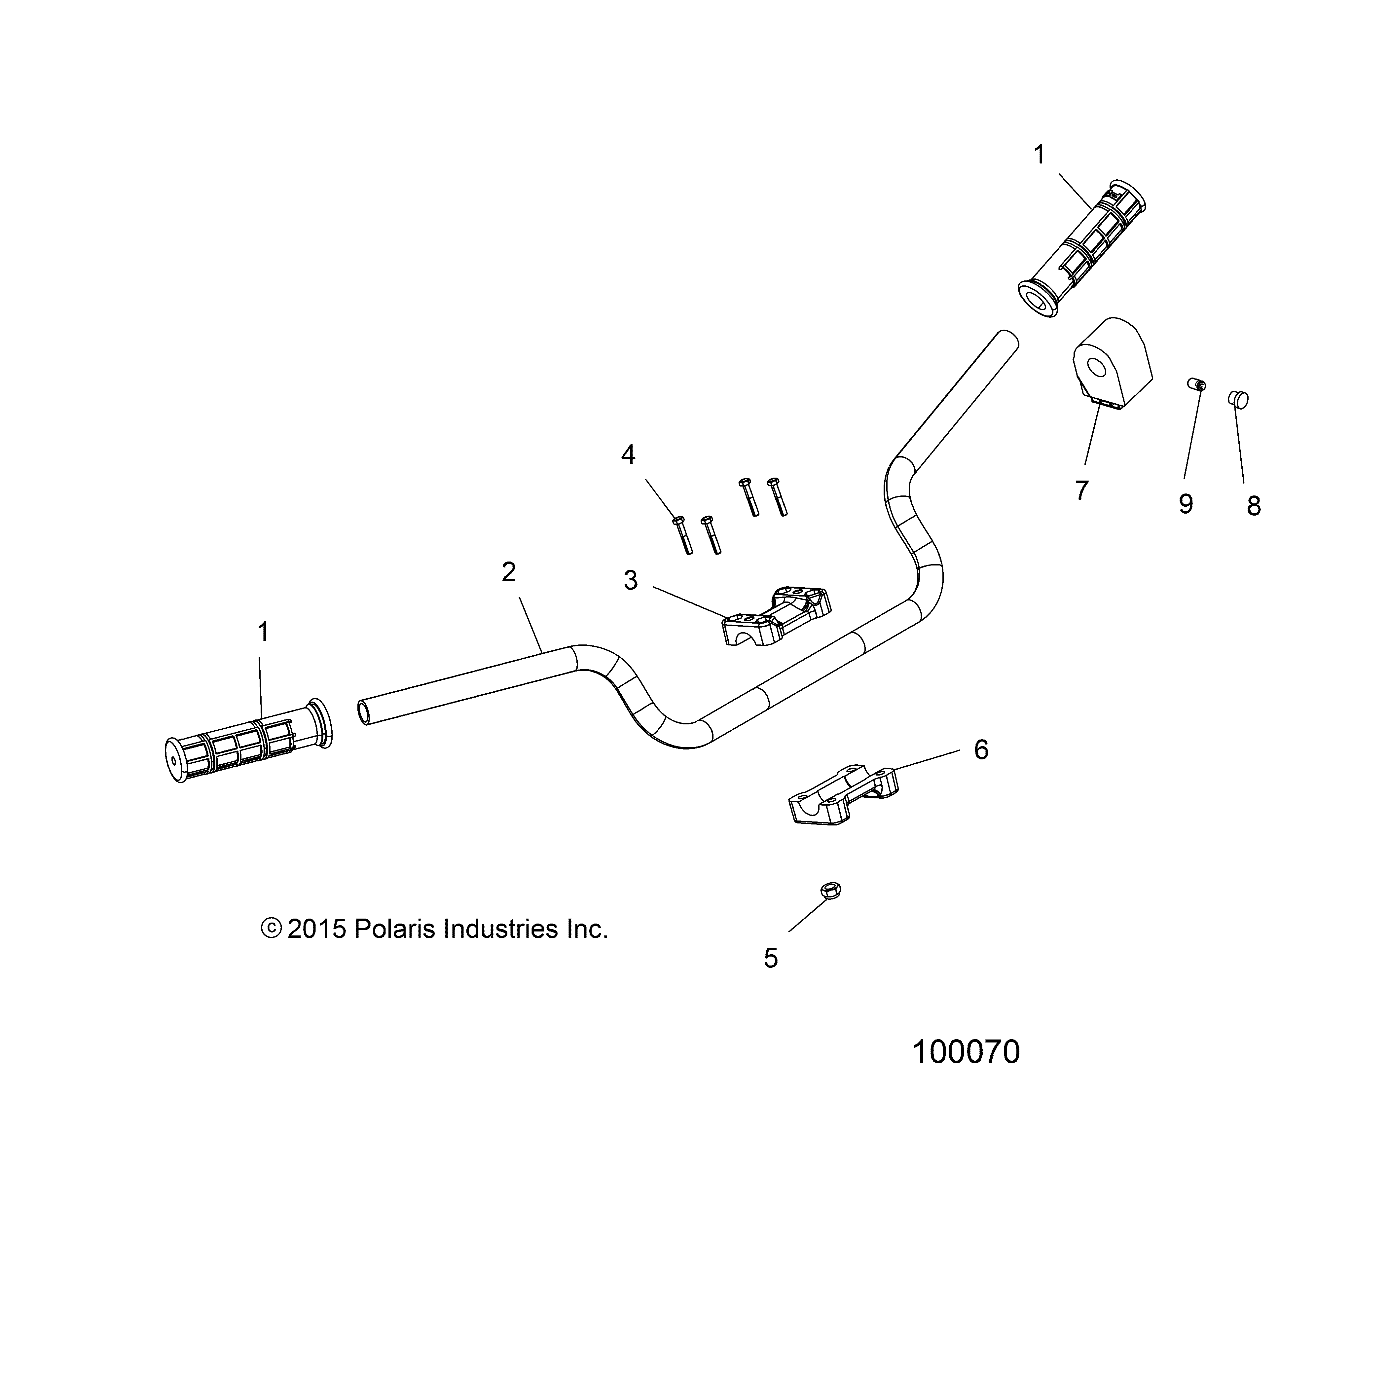 Foto diagrama Polaris que contem a peça 4011835